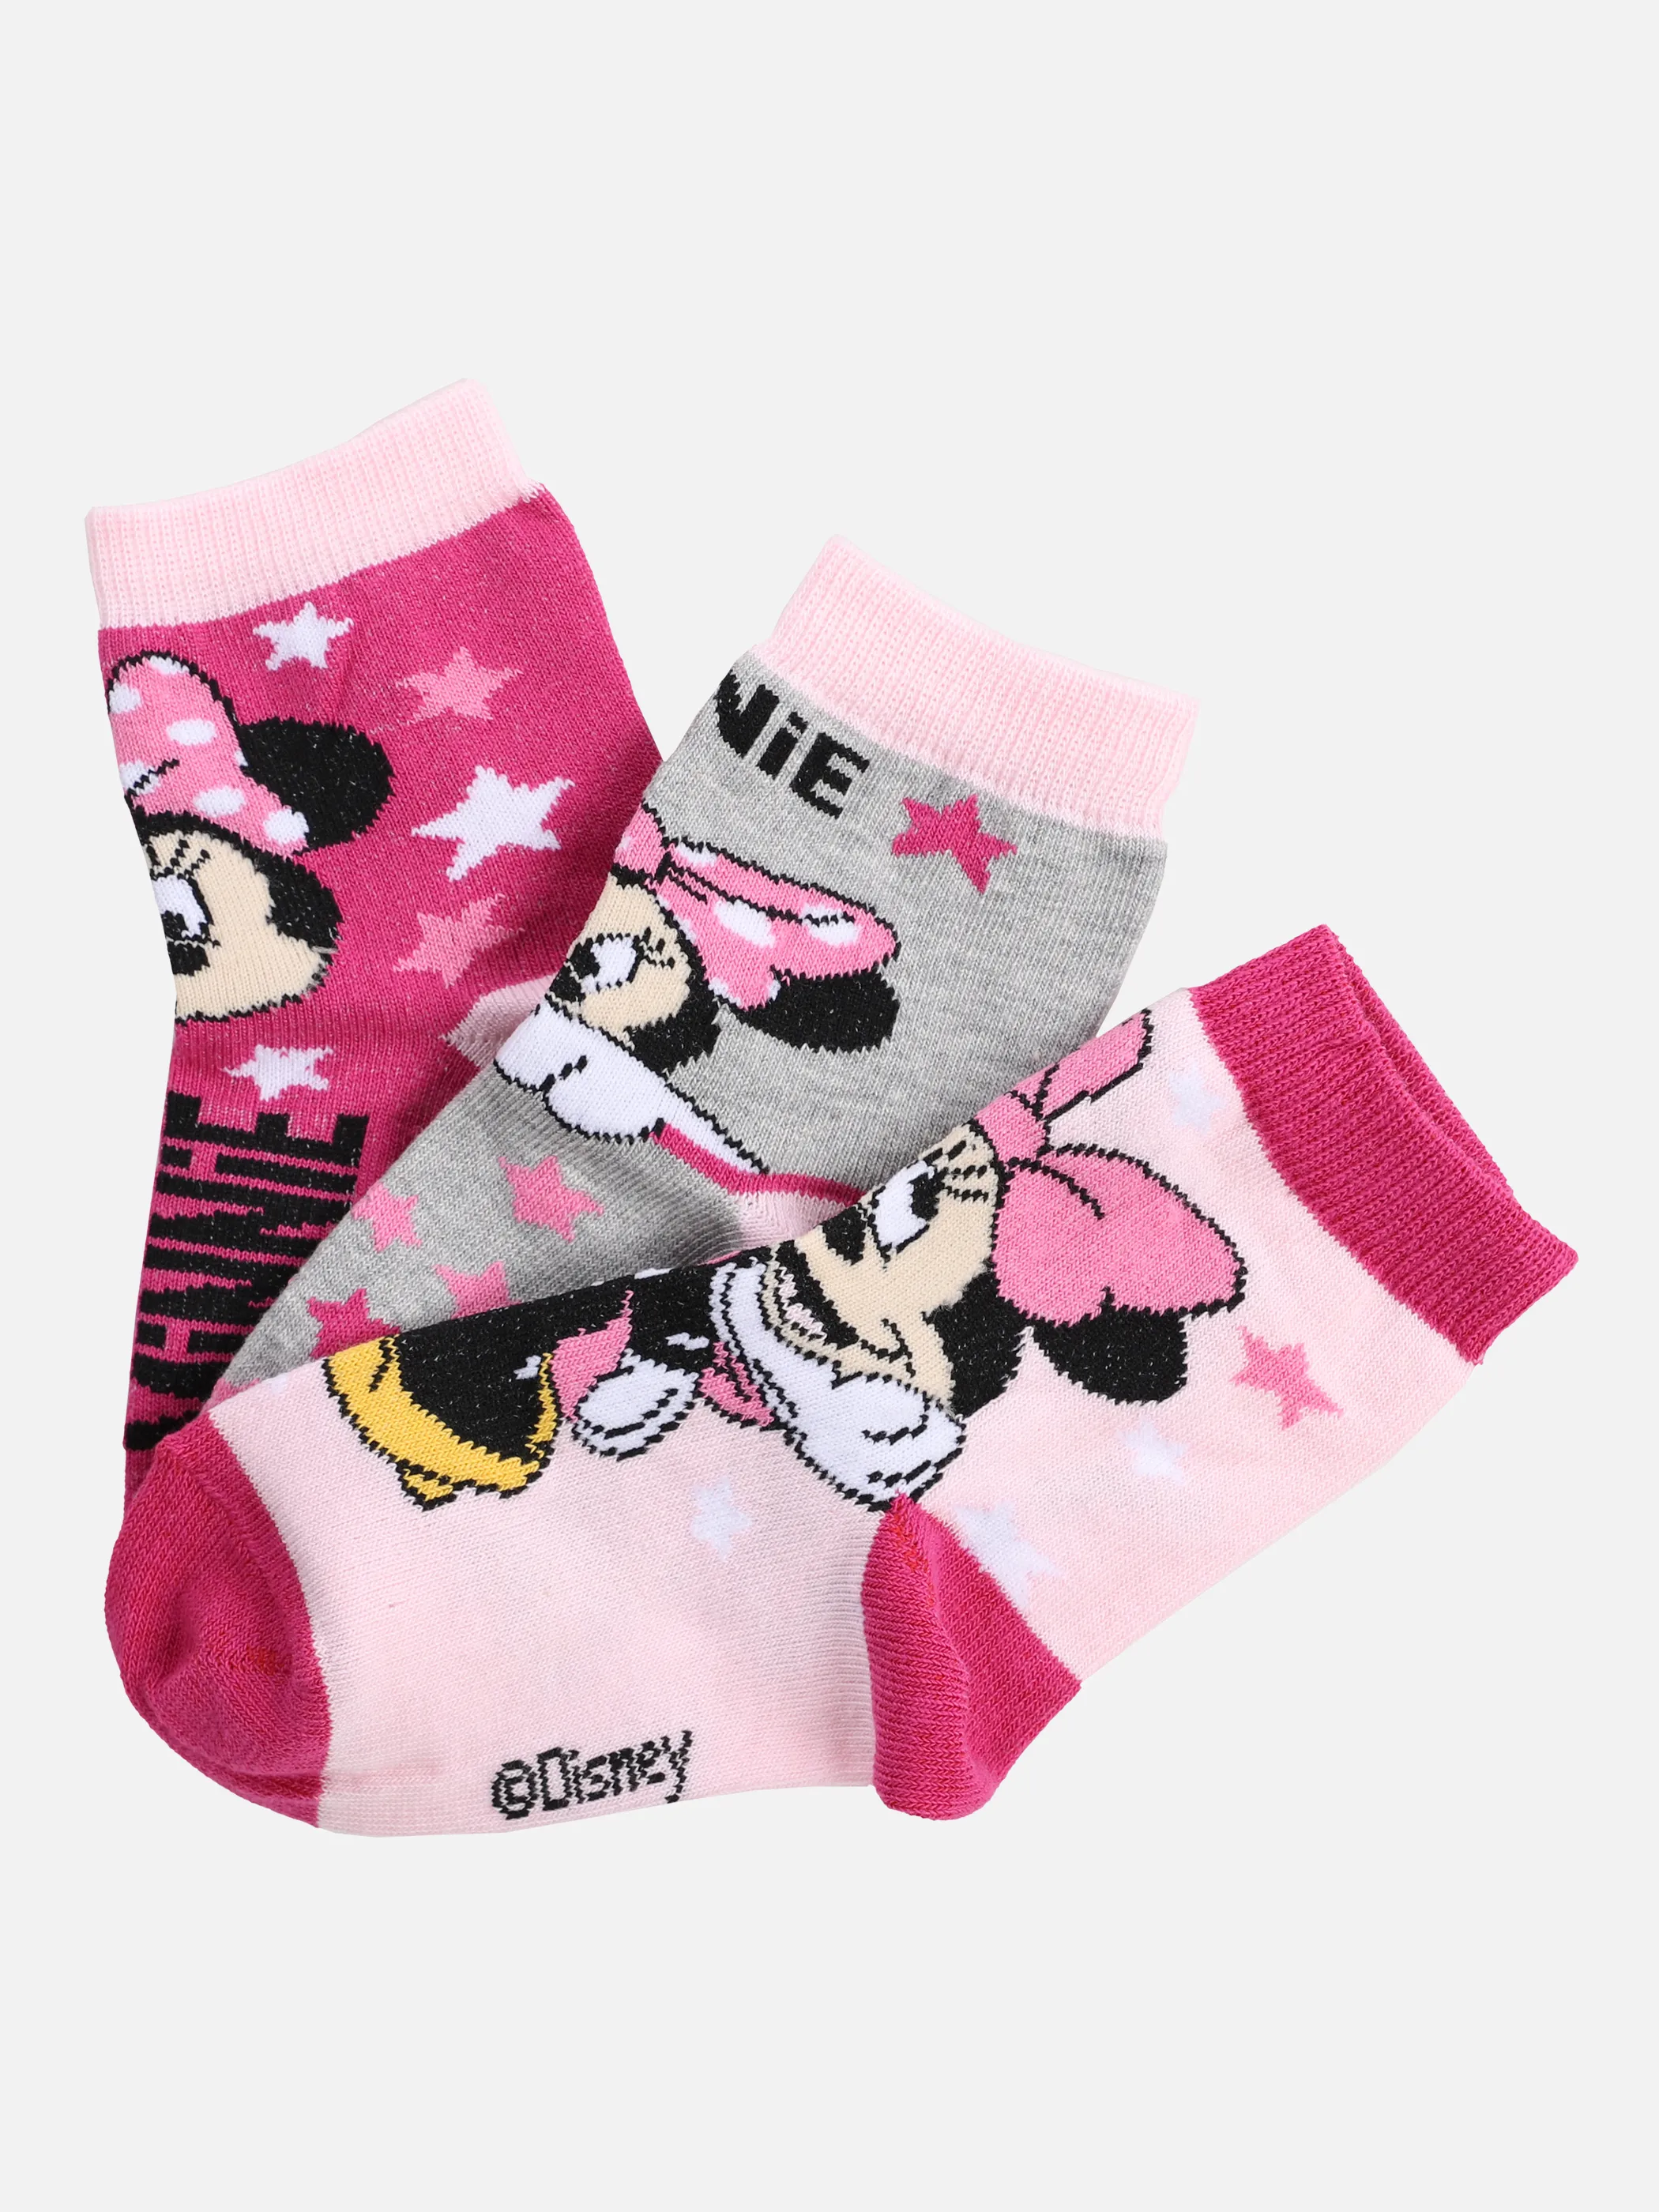 Lizenz Ki-Lizenz Socken 3er Pack Pink 866546 MIN-3-5358 1